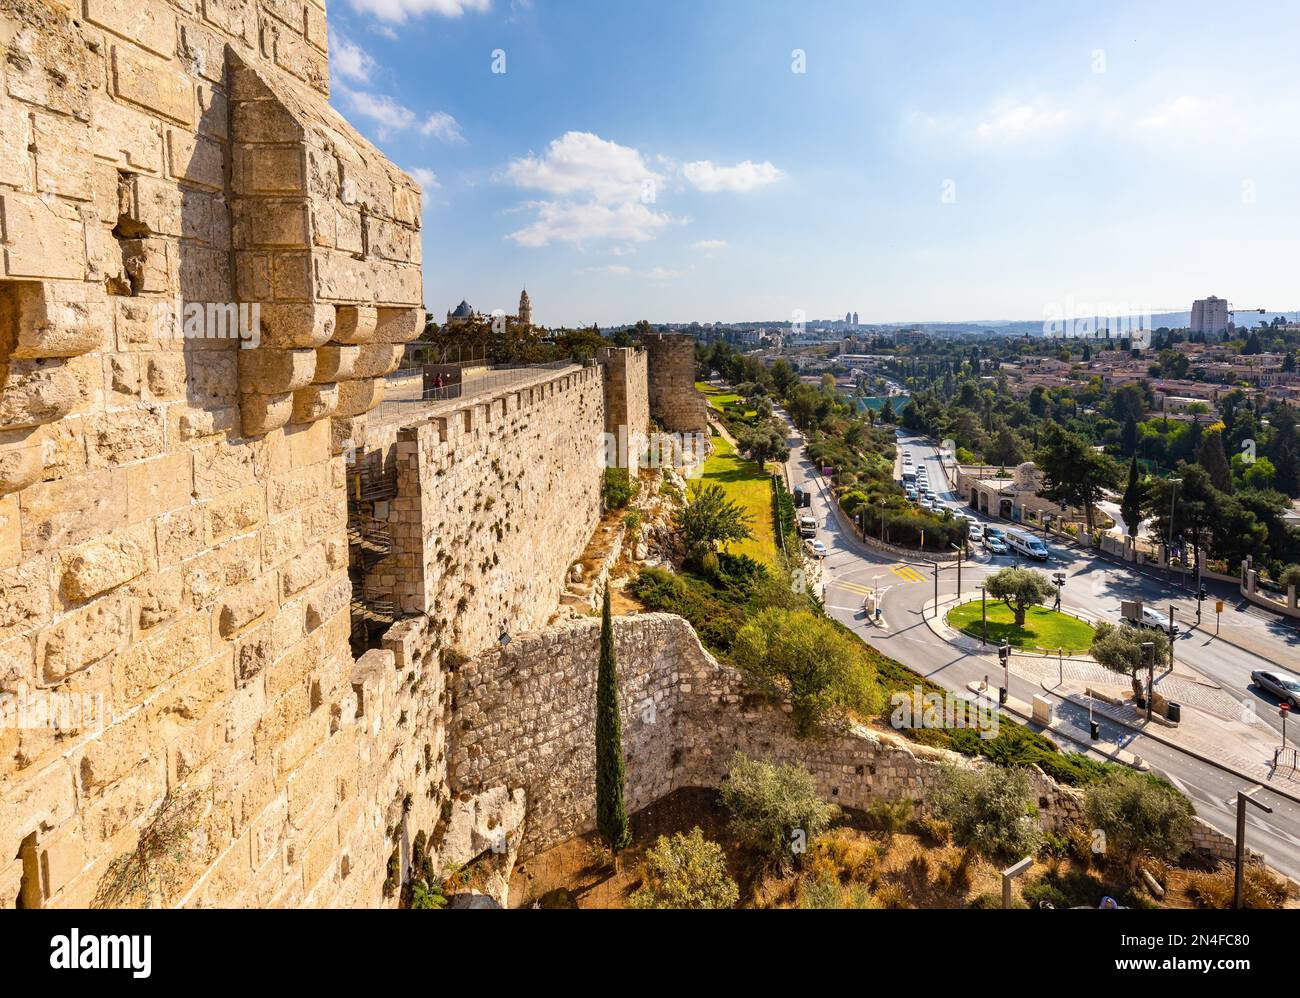 Jerusalem, Israel - 12. Oktober 2017: Mauern und Flanken der Davidsturm-Zitadelle mit alten Stadtmauern über der Hativat Yerushalayim-Straße in Jerusalem Stockfoto